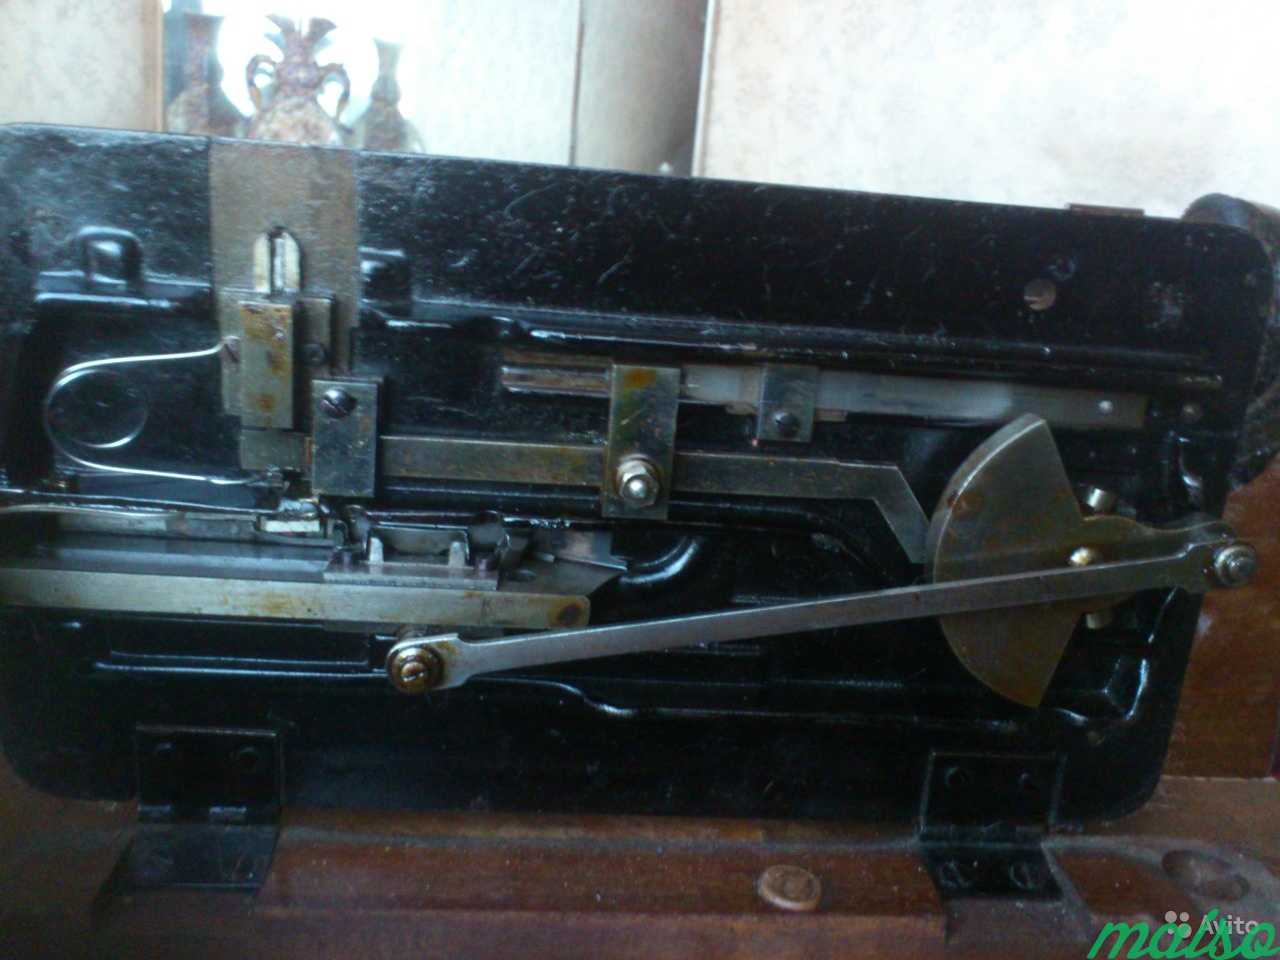 Юбилейная швейная машинка дома Поповых в Москве. Фото 5